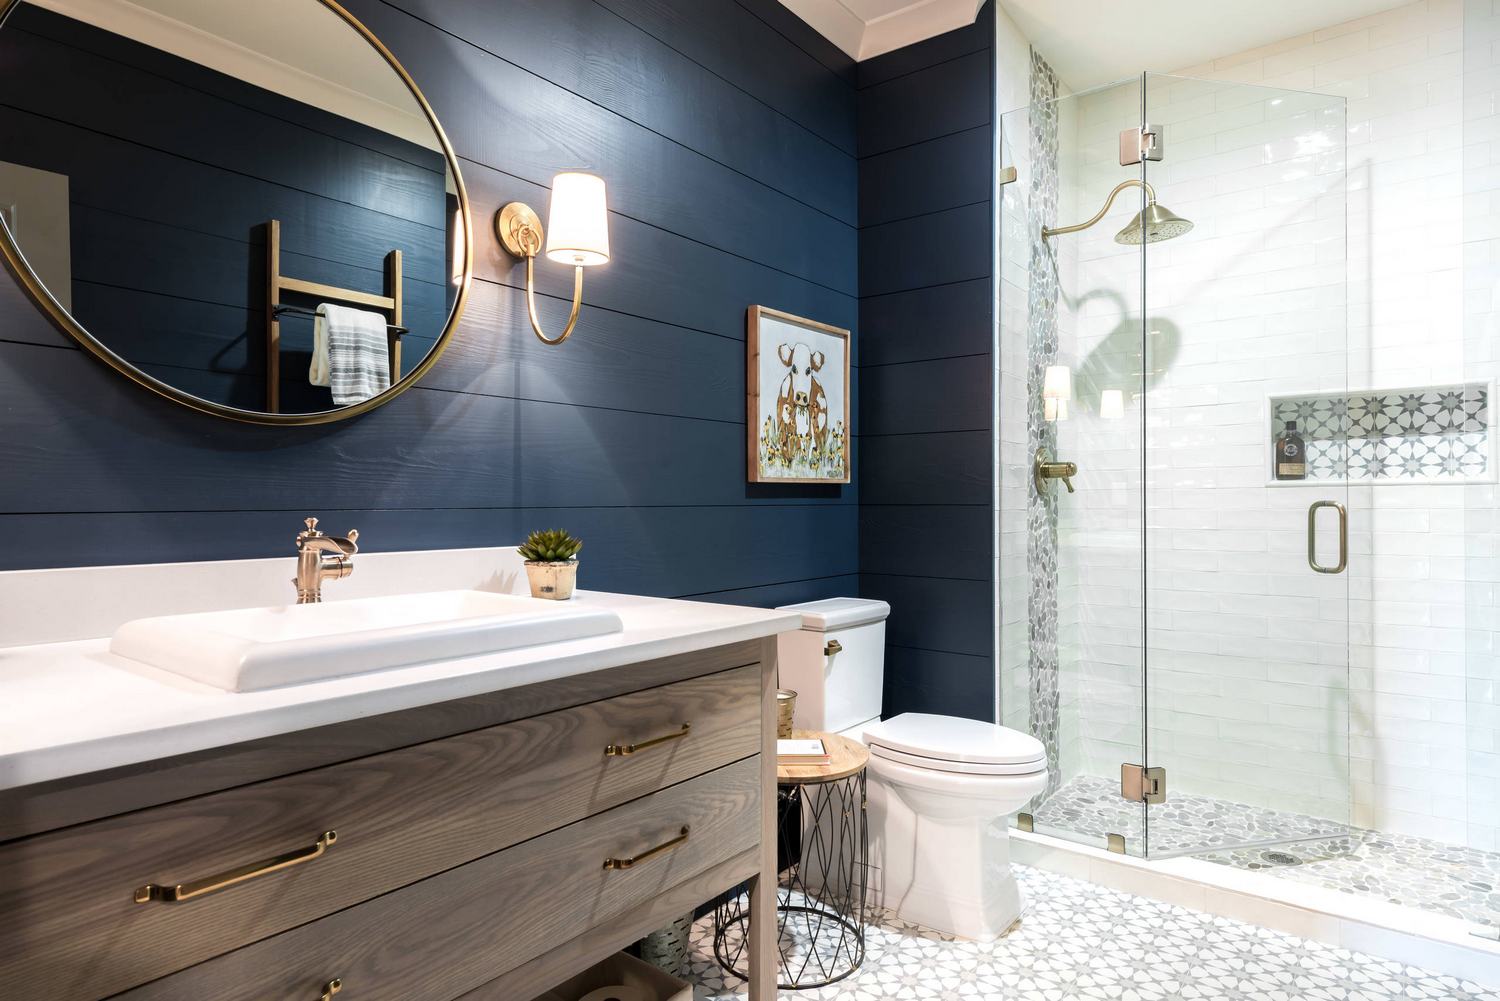 kék - 14 látványos szín ötlet új fürdőszoba elevenebb, vidámabb hangulatú dekorációjához